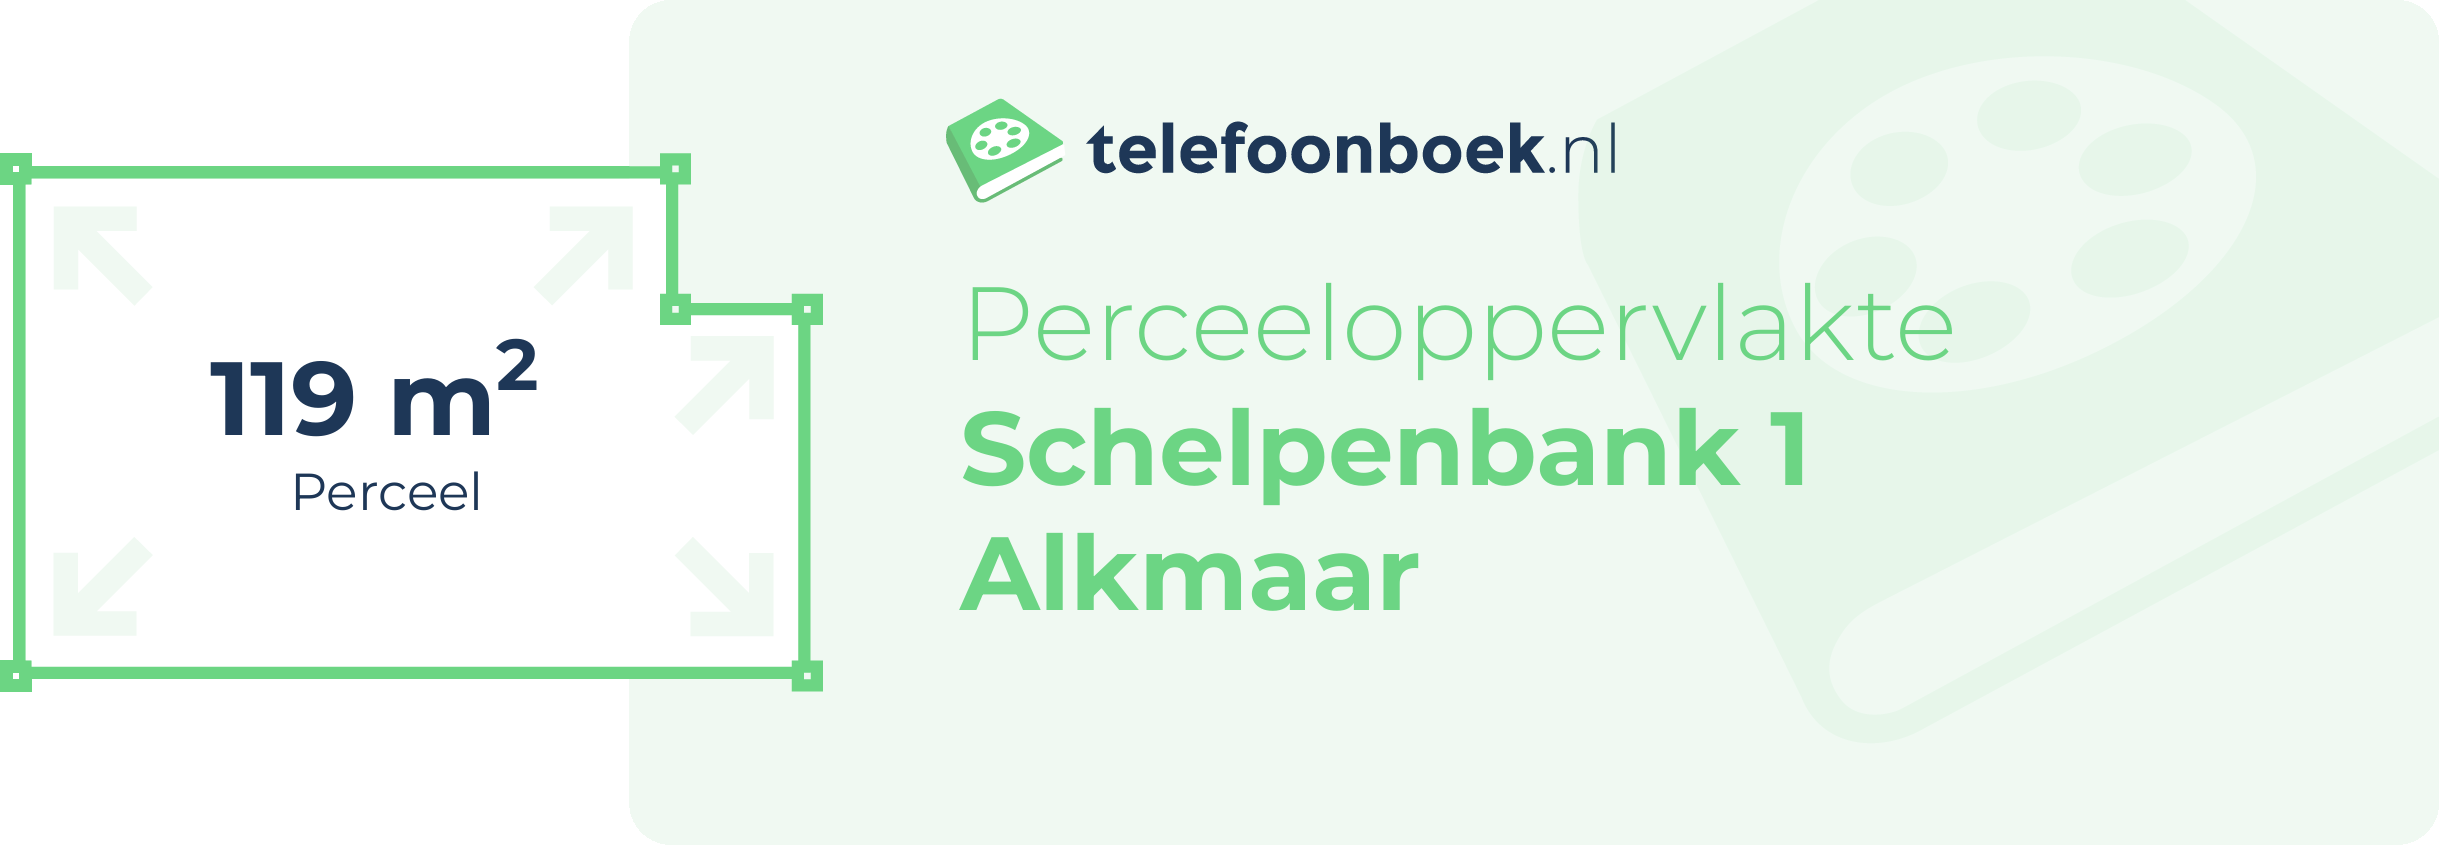 Perceeloppervlakte Schelpenbank 1 Alkmaar